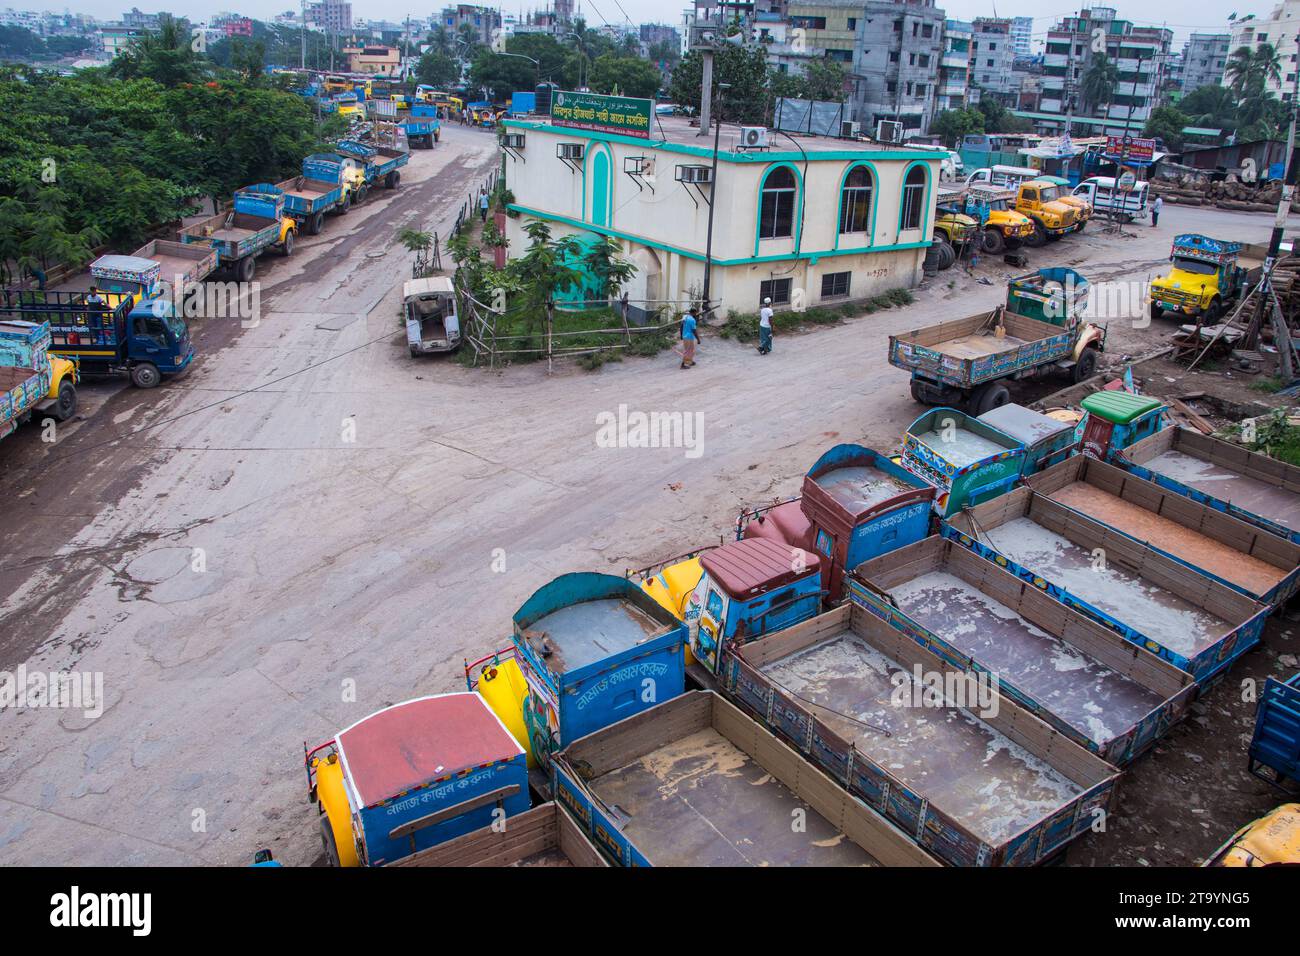 Photographie de rue bangladaise, cette image a été prise le 29 mai 2022, à Dhaka, Bangladesh Banque D'Images